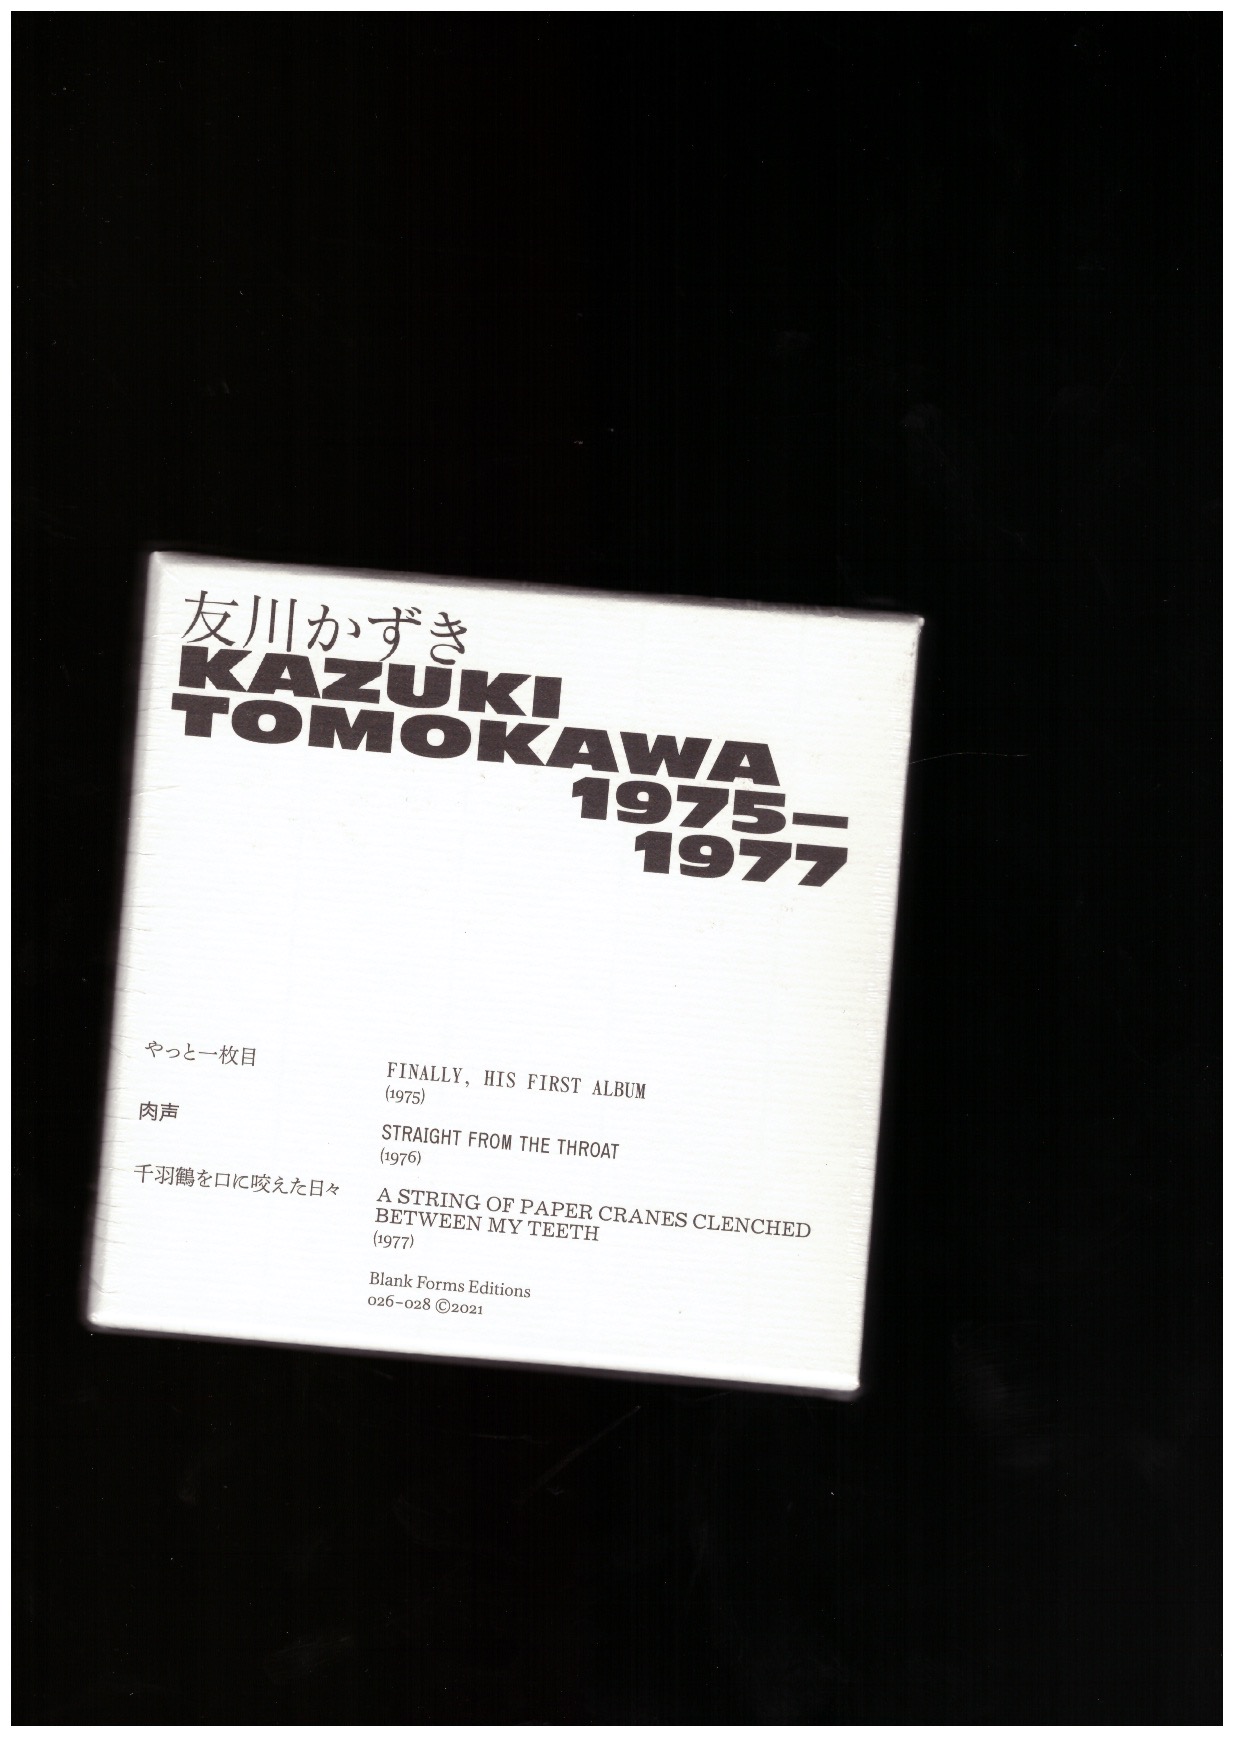 TOMOKAWA, Kazuki - Kazuki Tomokawa : 1975-1977